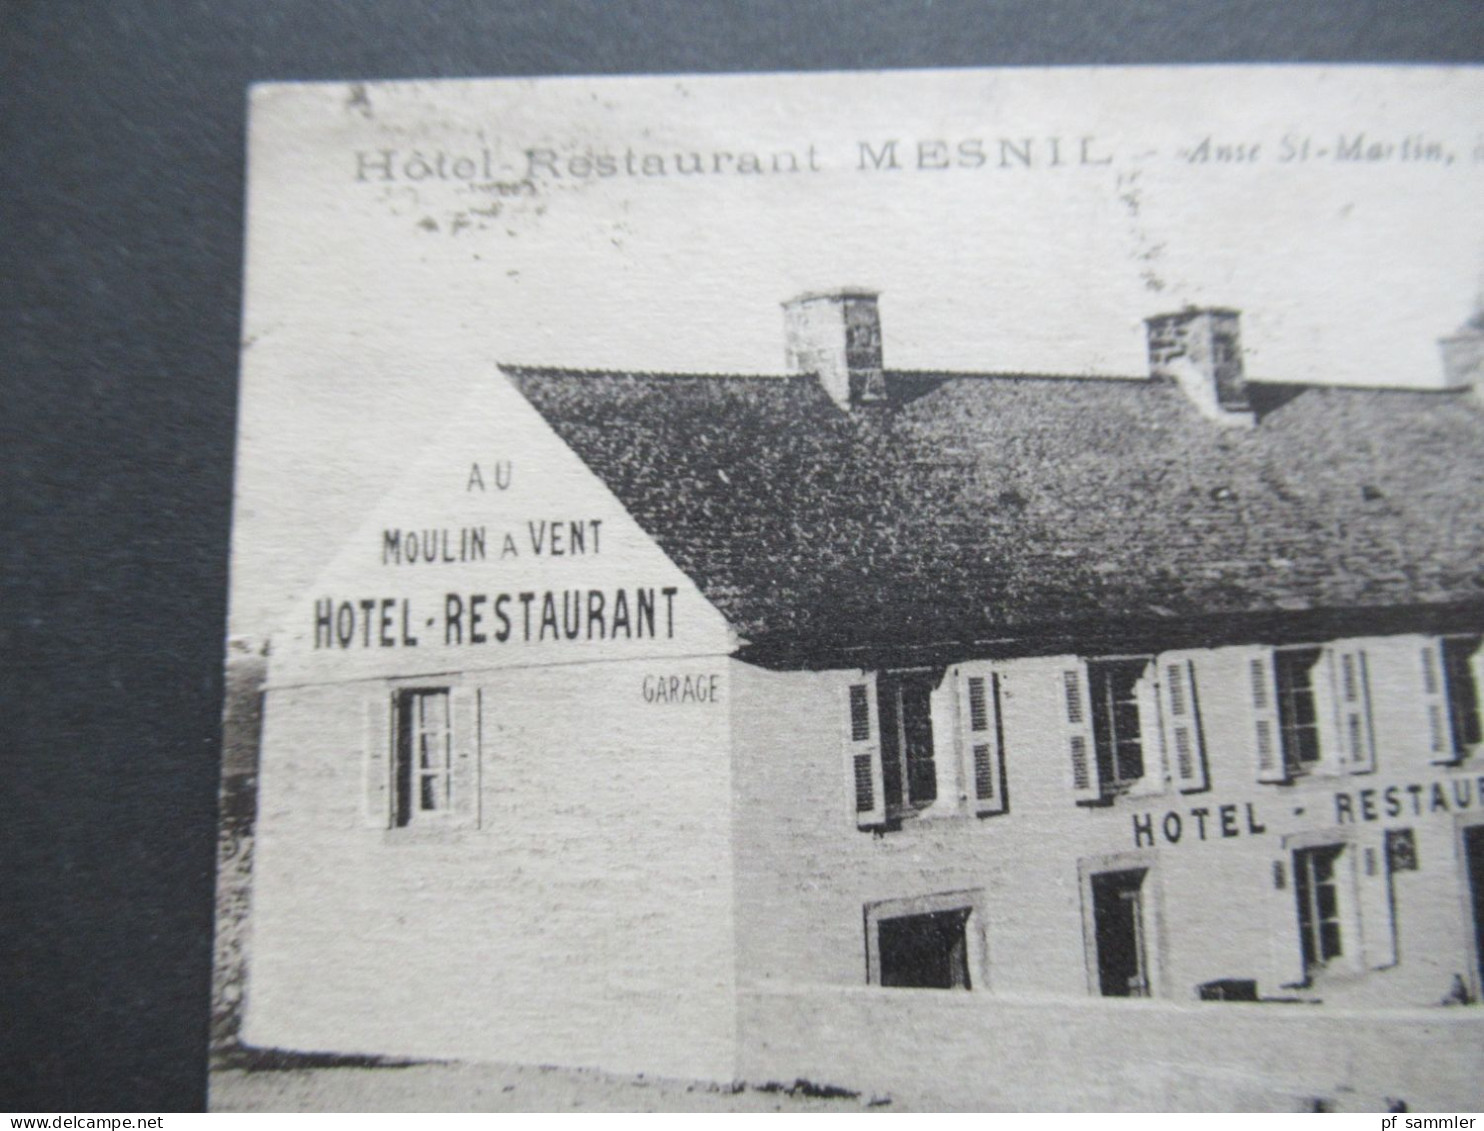 AK Frankreich 1927 Hotel Restaurant Mesnil Anse St Martin A St Germain Des Vaux Hague / Au Moulin A Vent Avec Garage - Hotels & Restaurants